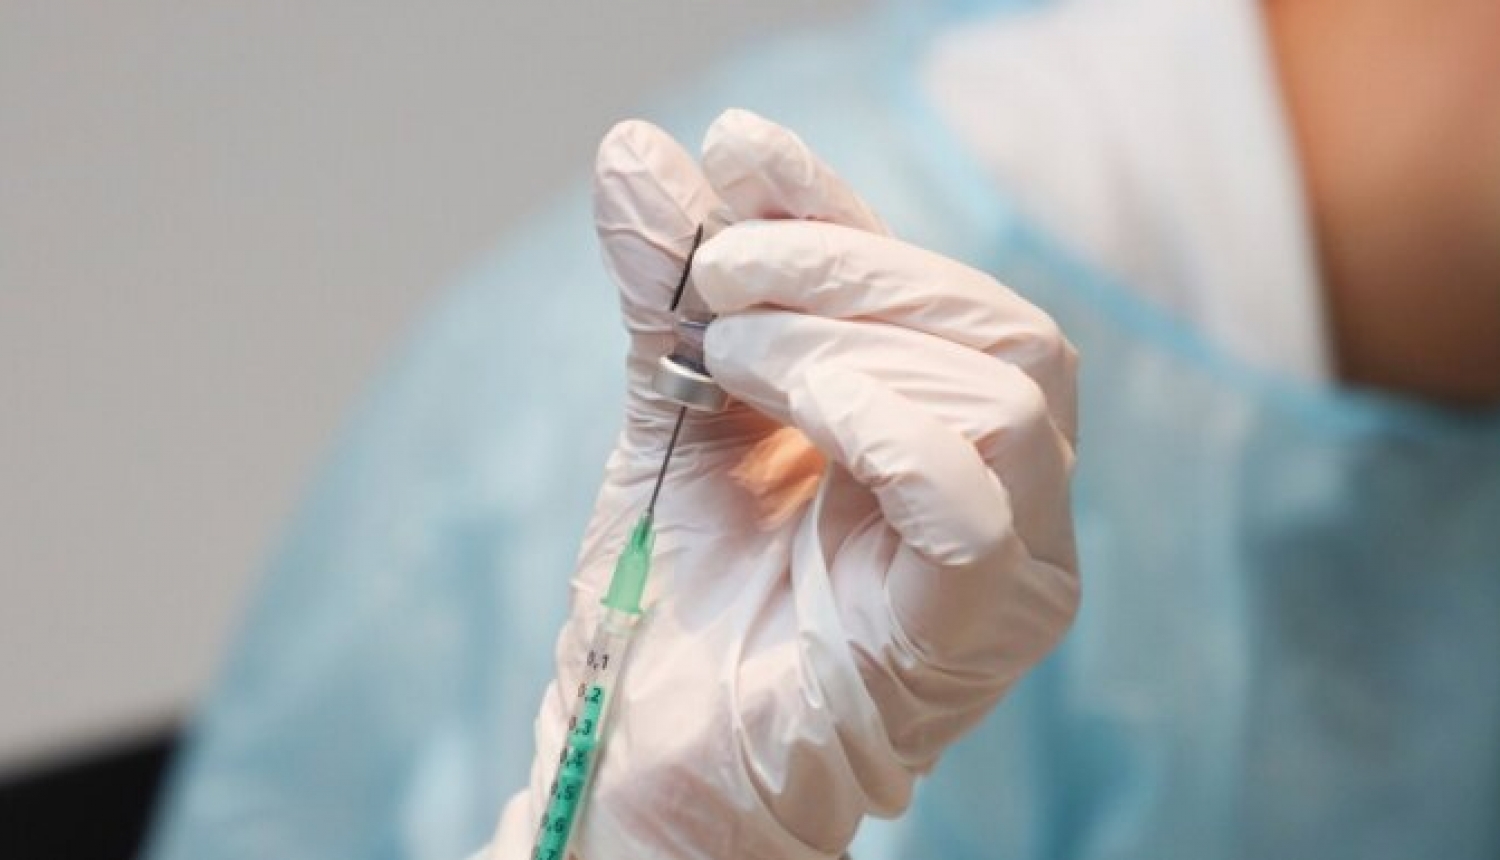 Zāļu valsts aģentūra izstrādājusi informatīvu materiālu, kas satur pierādījumos balstītu un uzticamu informāciju par vakcīnām